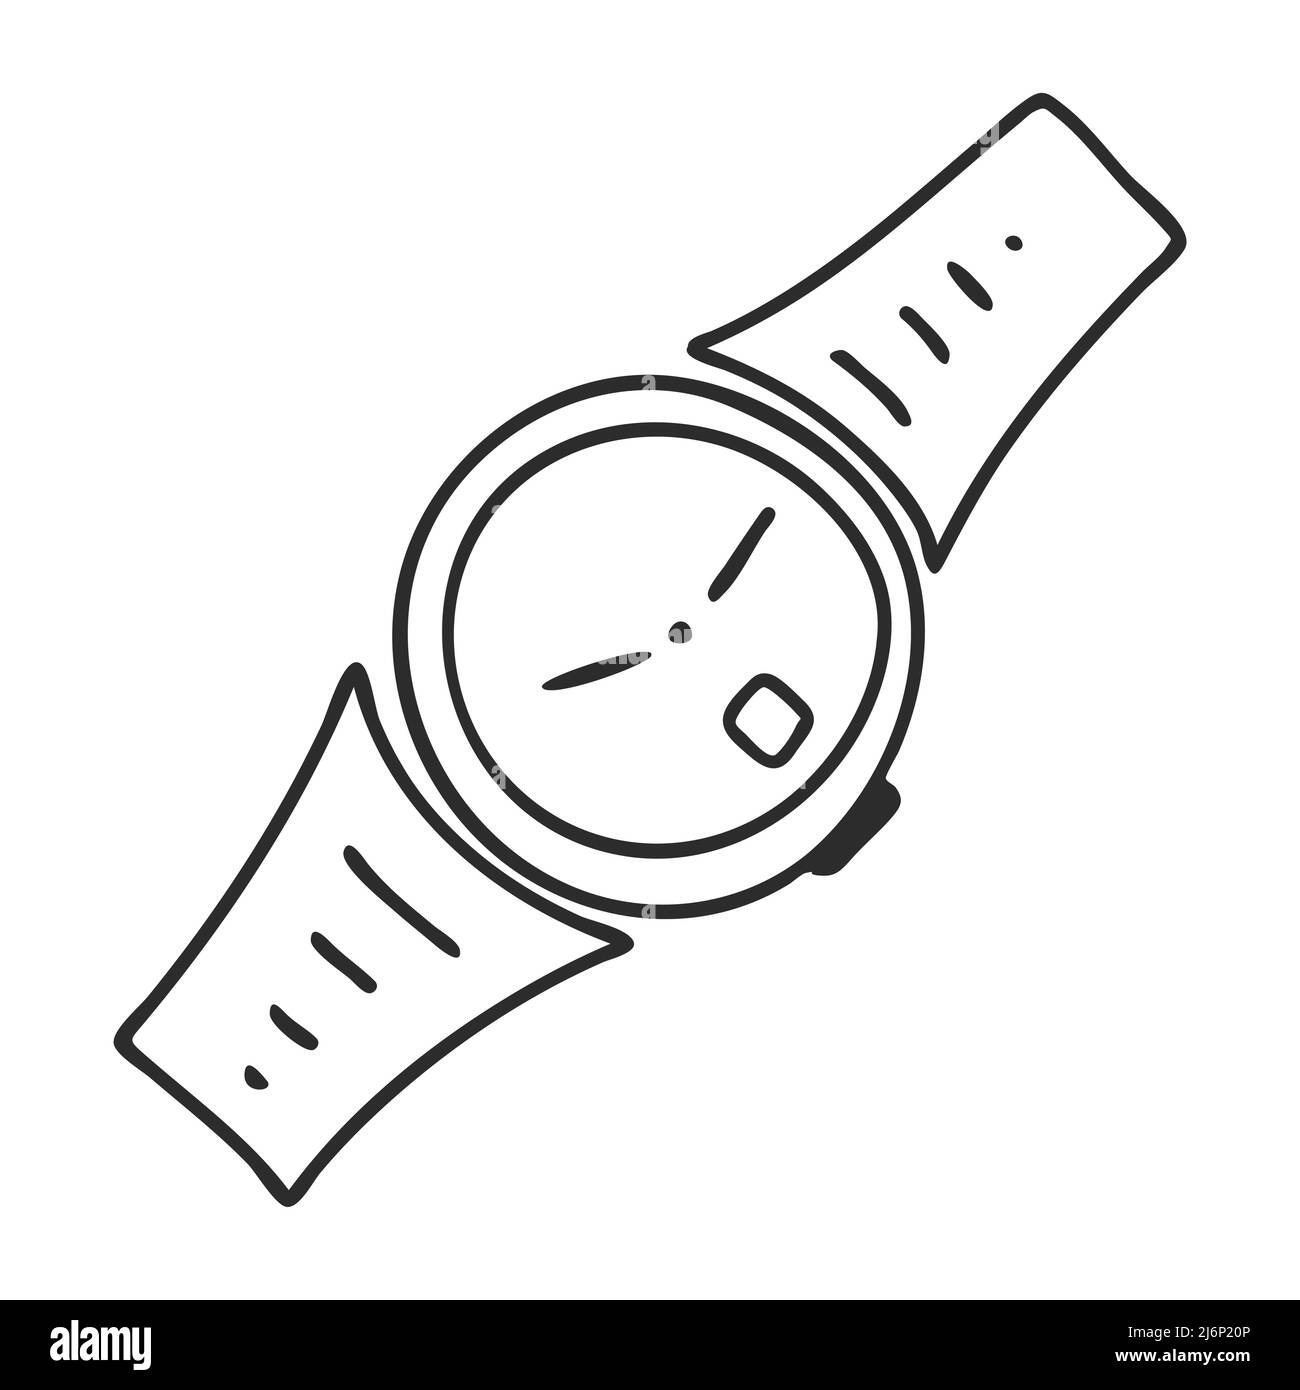 Reloj de pulsera dibujo Imágenes de stock en blanco y negro - Alamy